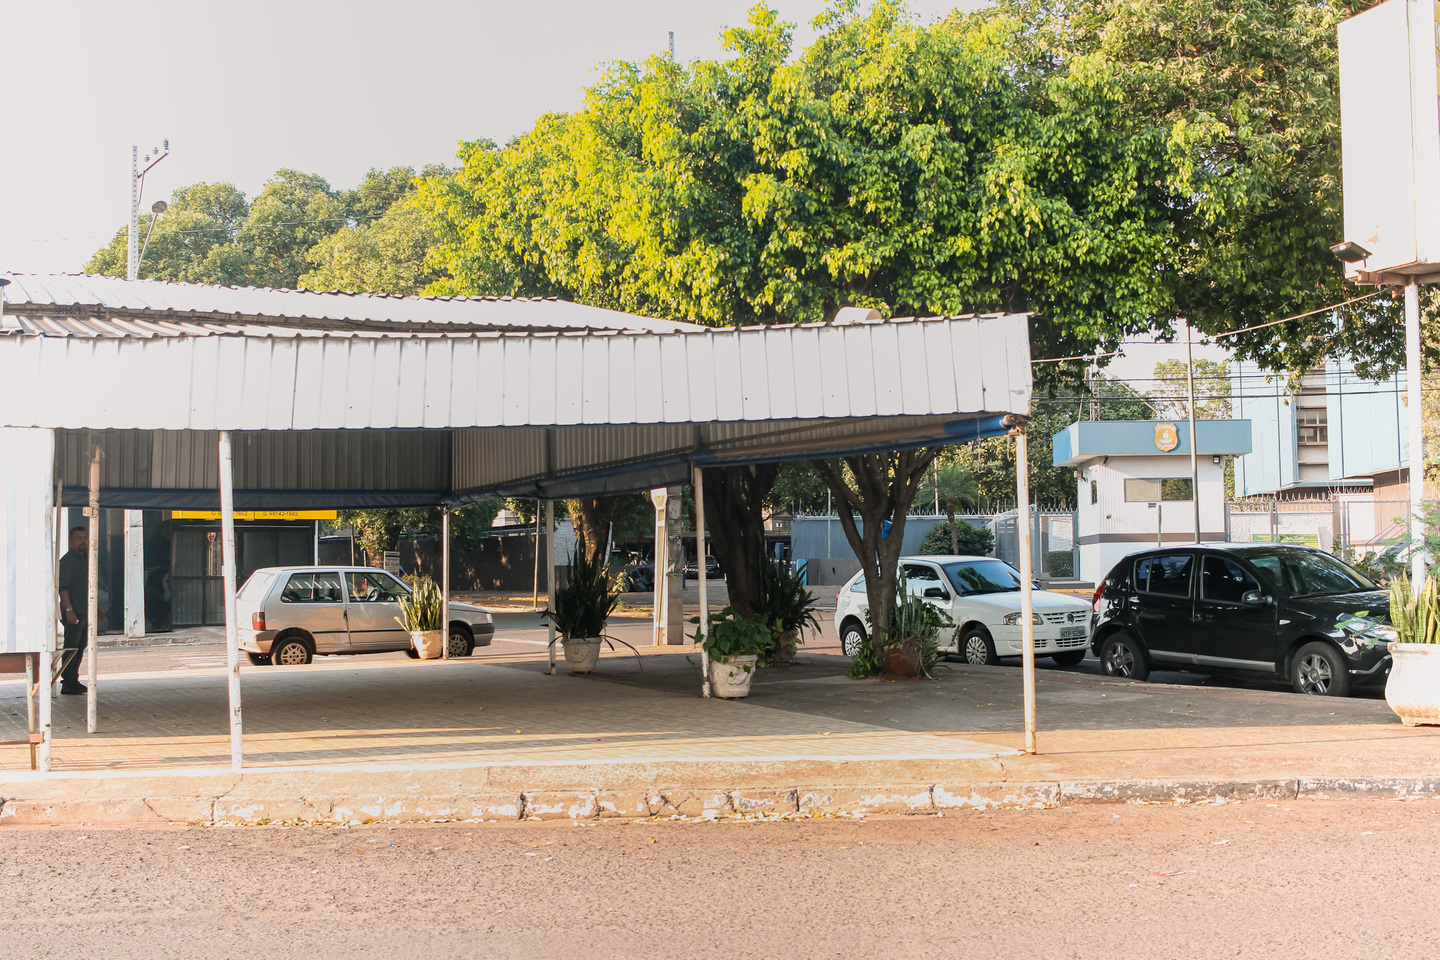 Lanchonete de Talma faica na Crisântemos (nº 20), em frente a sede da PF em Campo Grande. Foto: Tero Queiroz